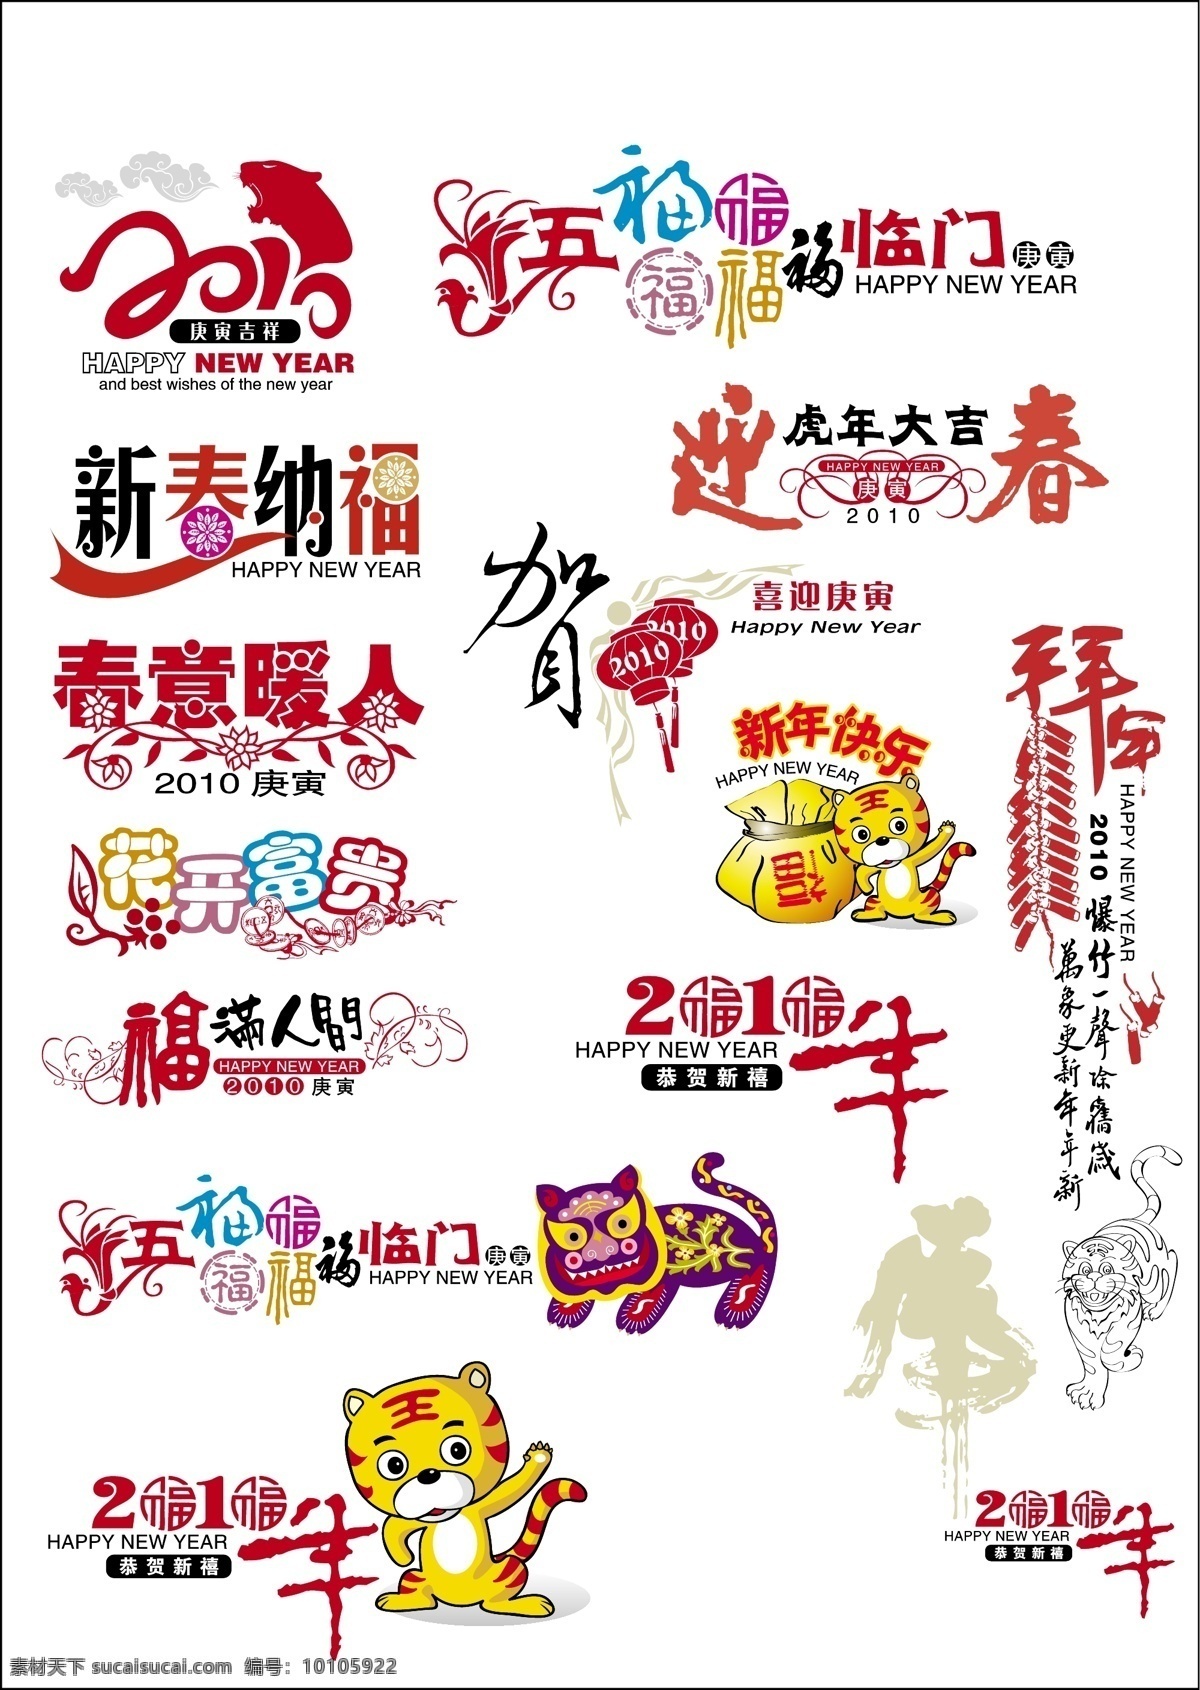 卡通 老虎 2010 虎年 春节 美工 字 节日素材 2015 新年 元旦 元宵